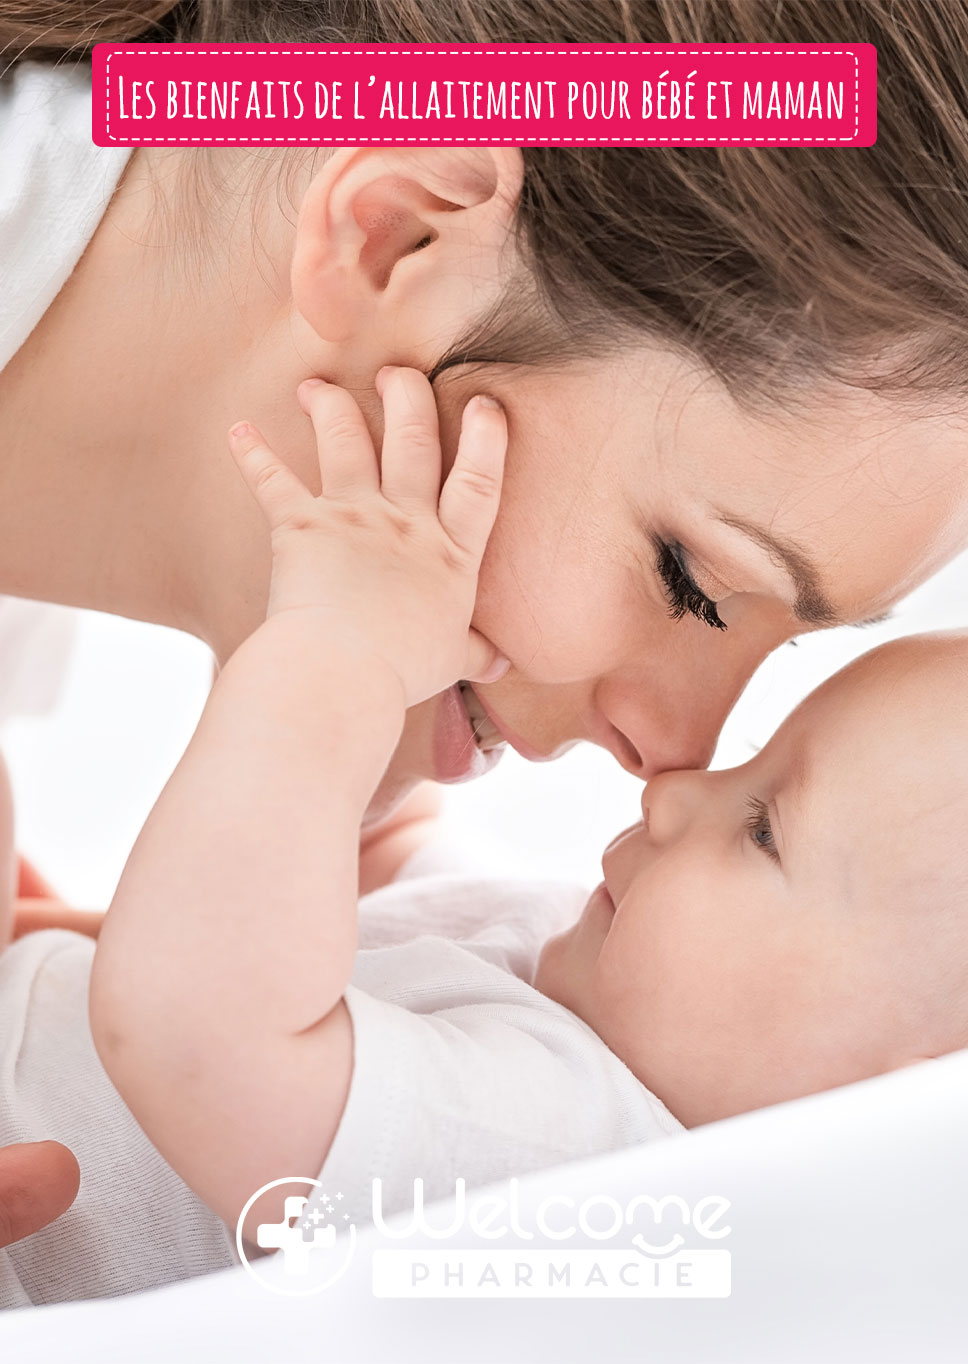 Les bienfaits de l’allaitement pour bébé et maman